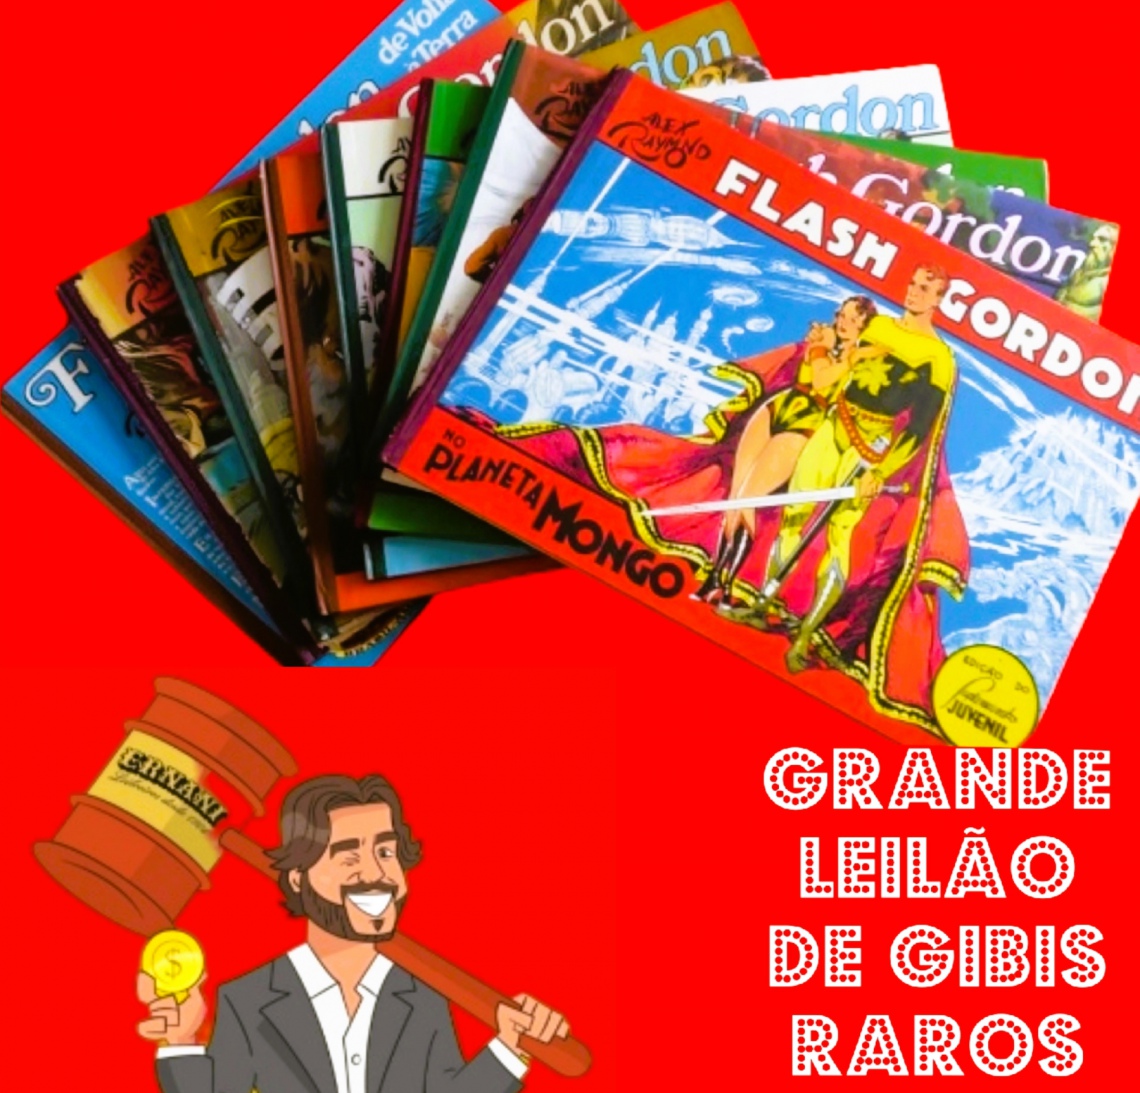 GRANDE LEILÃO DE GIBIS RAROS